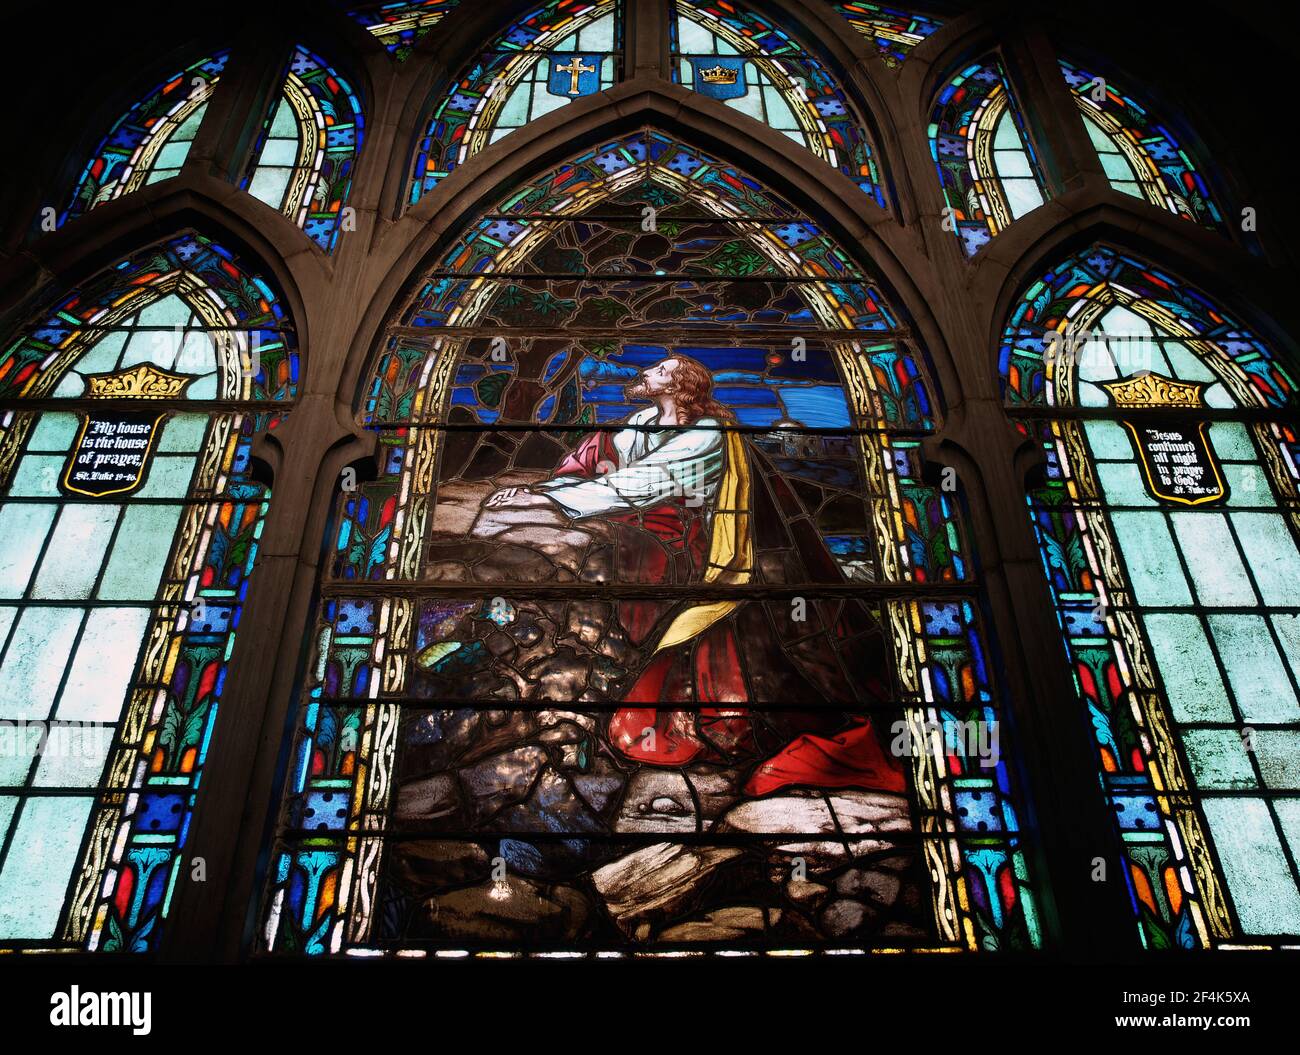 SPRINGFIELD, STATI UNITI - Mar 12, 2021: Gesù Cristo è raffigurato in preghiera nel Giardino del Getsemani in questa vetrata in una chiesa in M Foto Stock